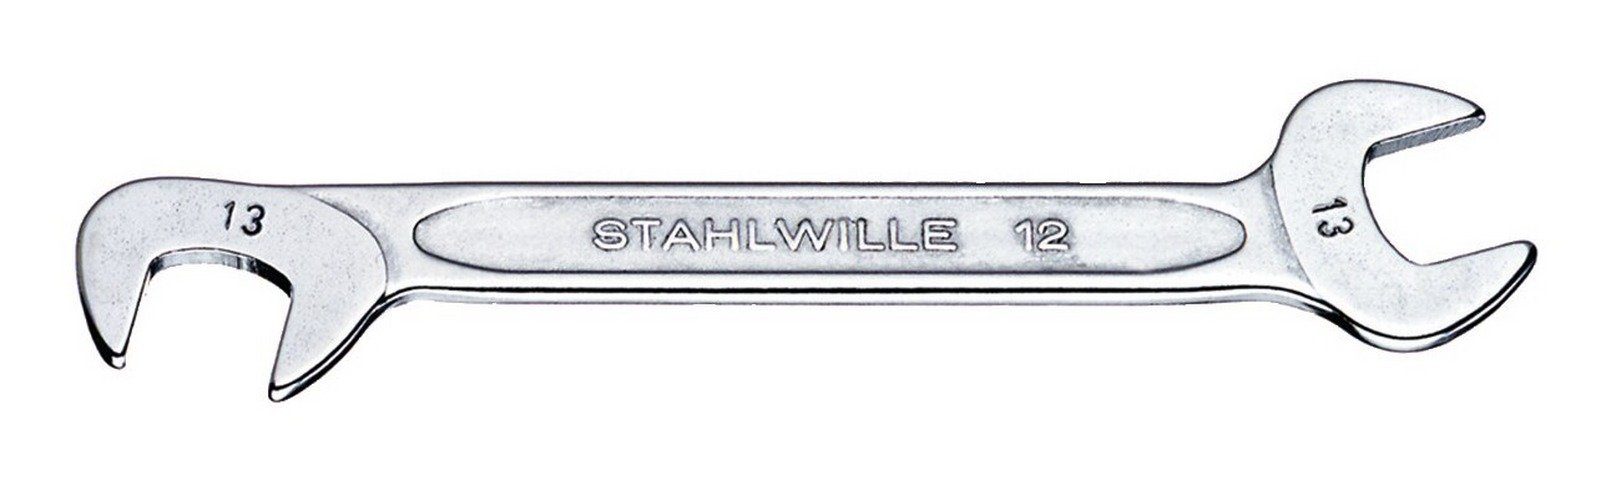 Stahlwille Maulschlüssel, Doppelmaulschlüssel klein 12 mm